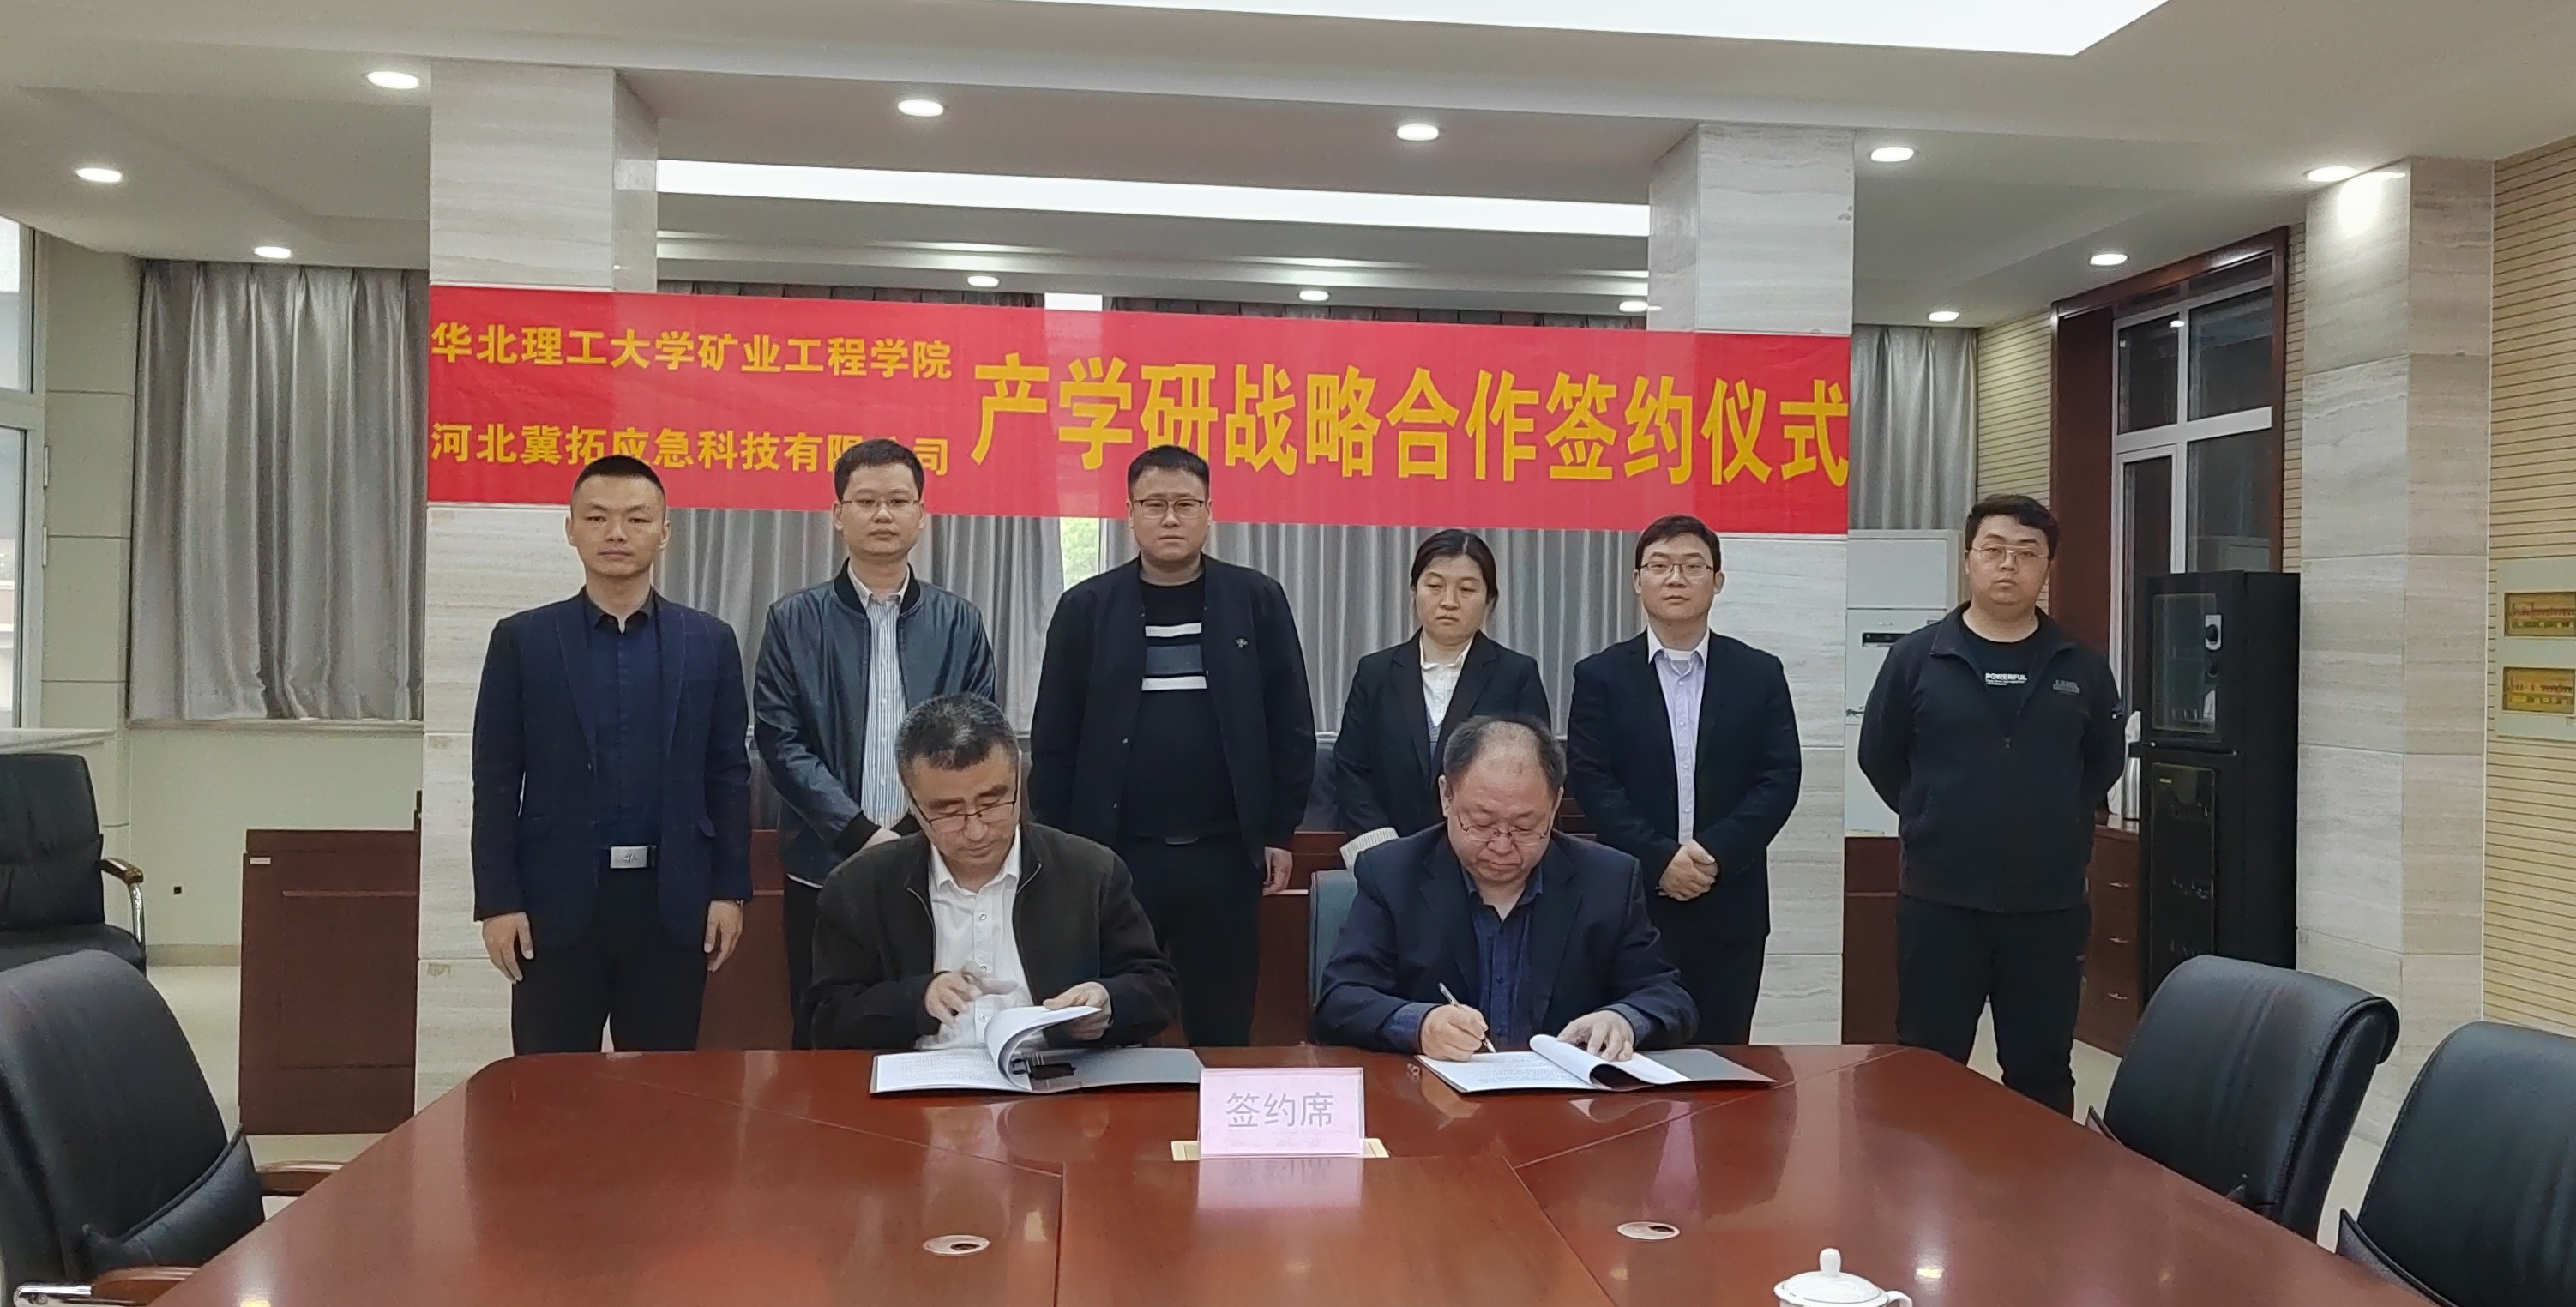 168掌上开奖科技公司与华北理工大学矿业工程学院签署产学研合作协议